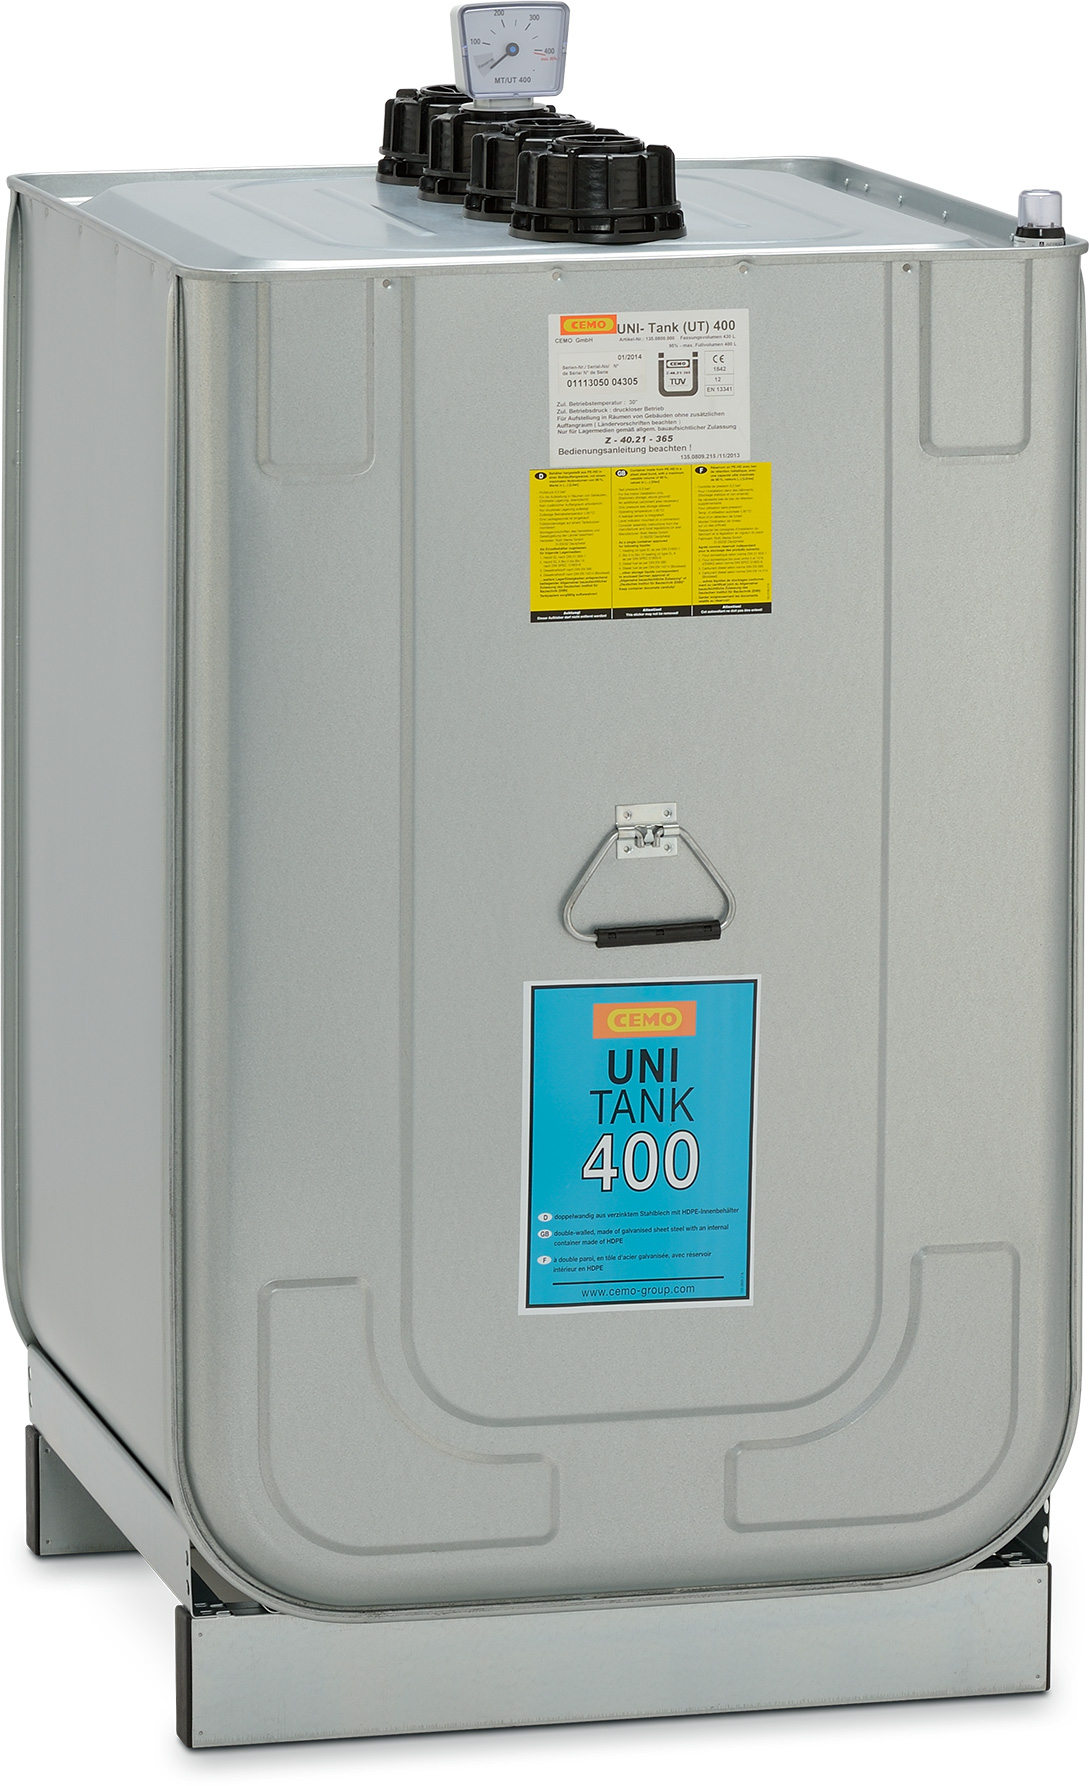 UNI-Tank Inhalt 400 Liter für Diesel- und Frischöl-Lagerung